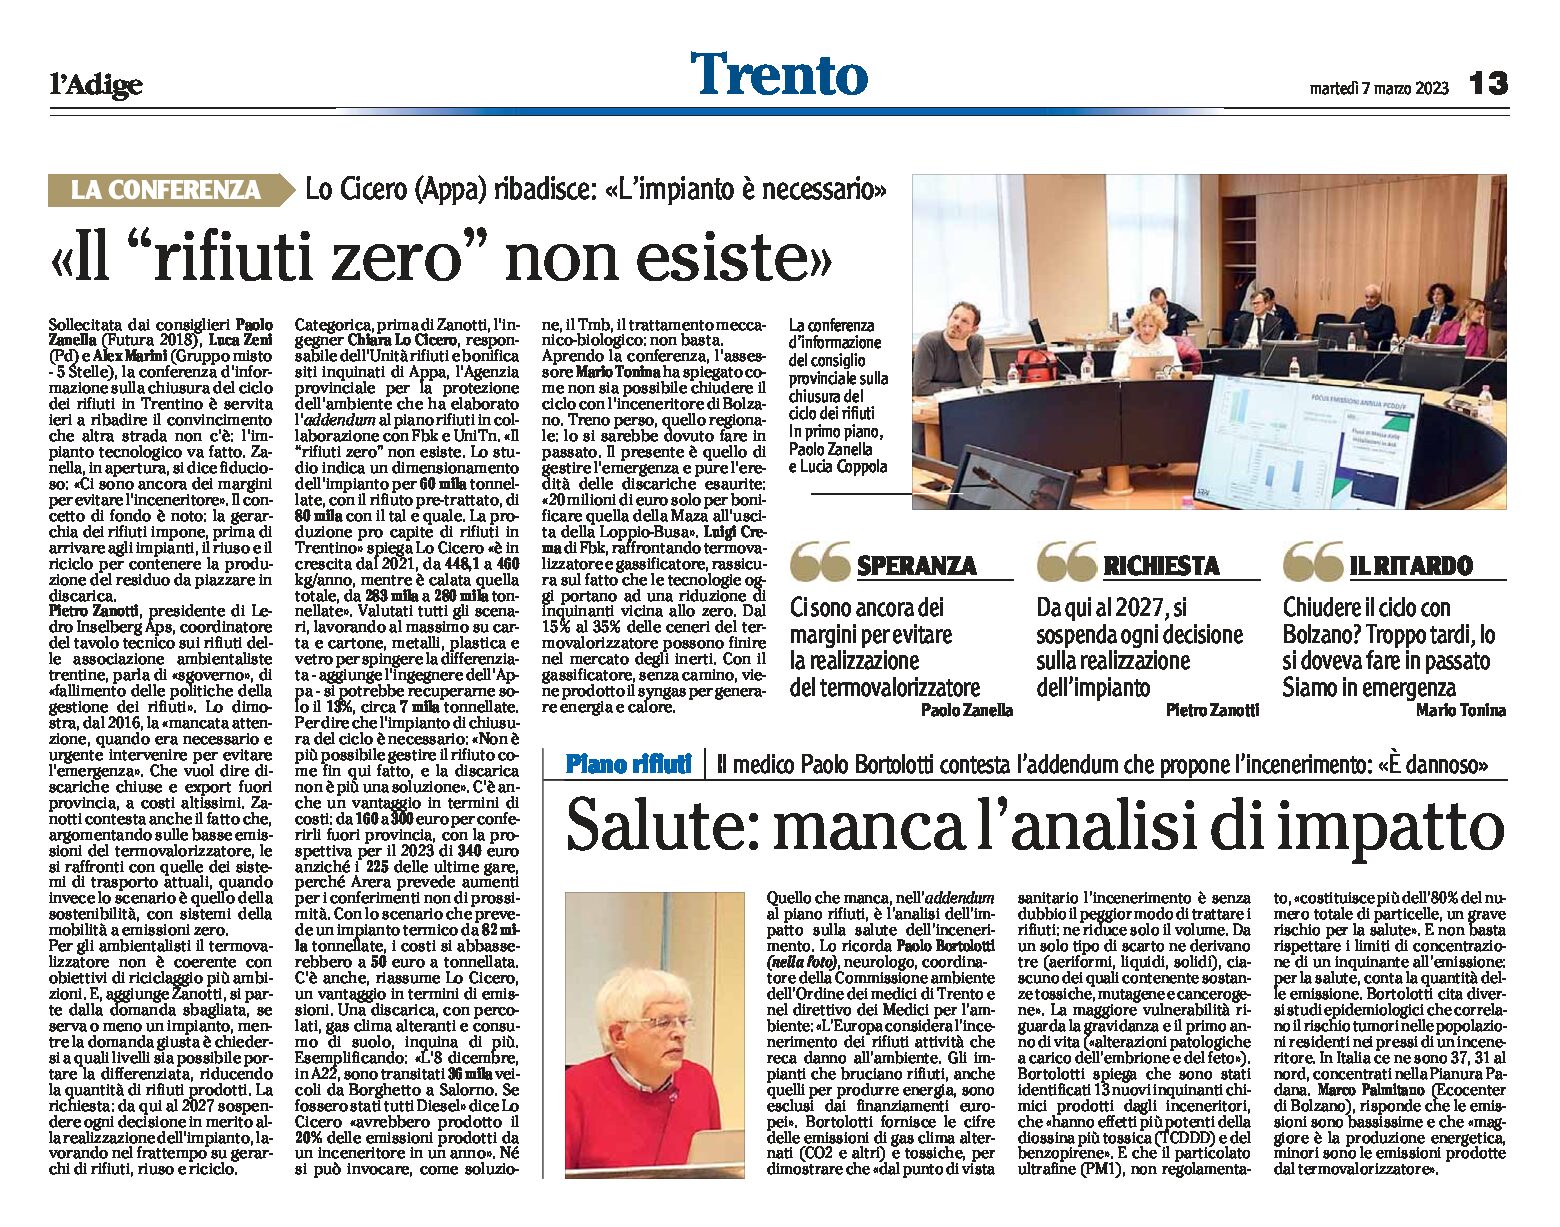 Trentino: l’impianto è necessario. “Rifiuti zero” non esiste